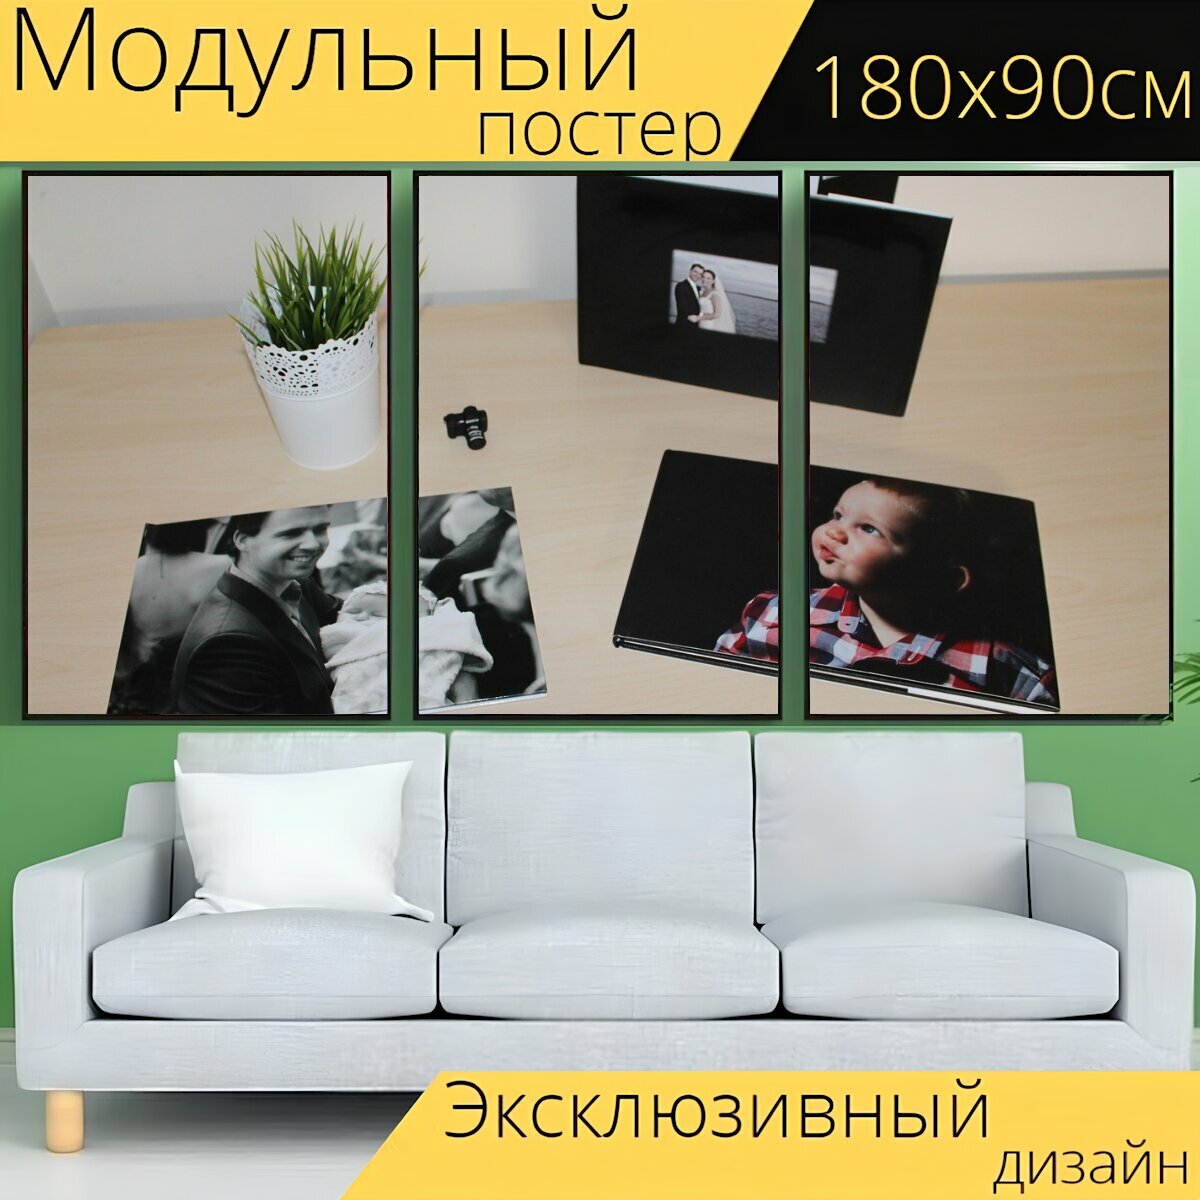 Модульный постер "Любовь, фотографии, фотокнига" 180 x 90 см. для интерьера